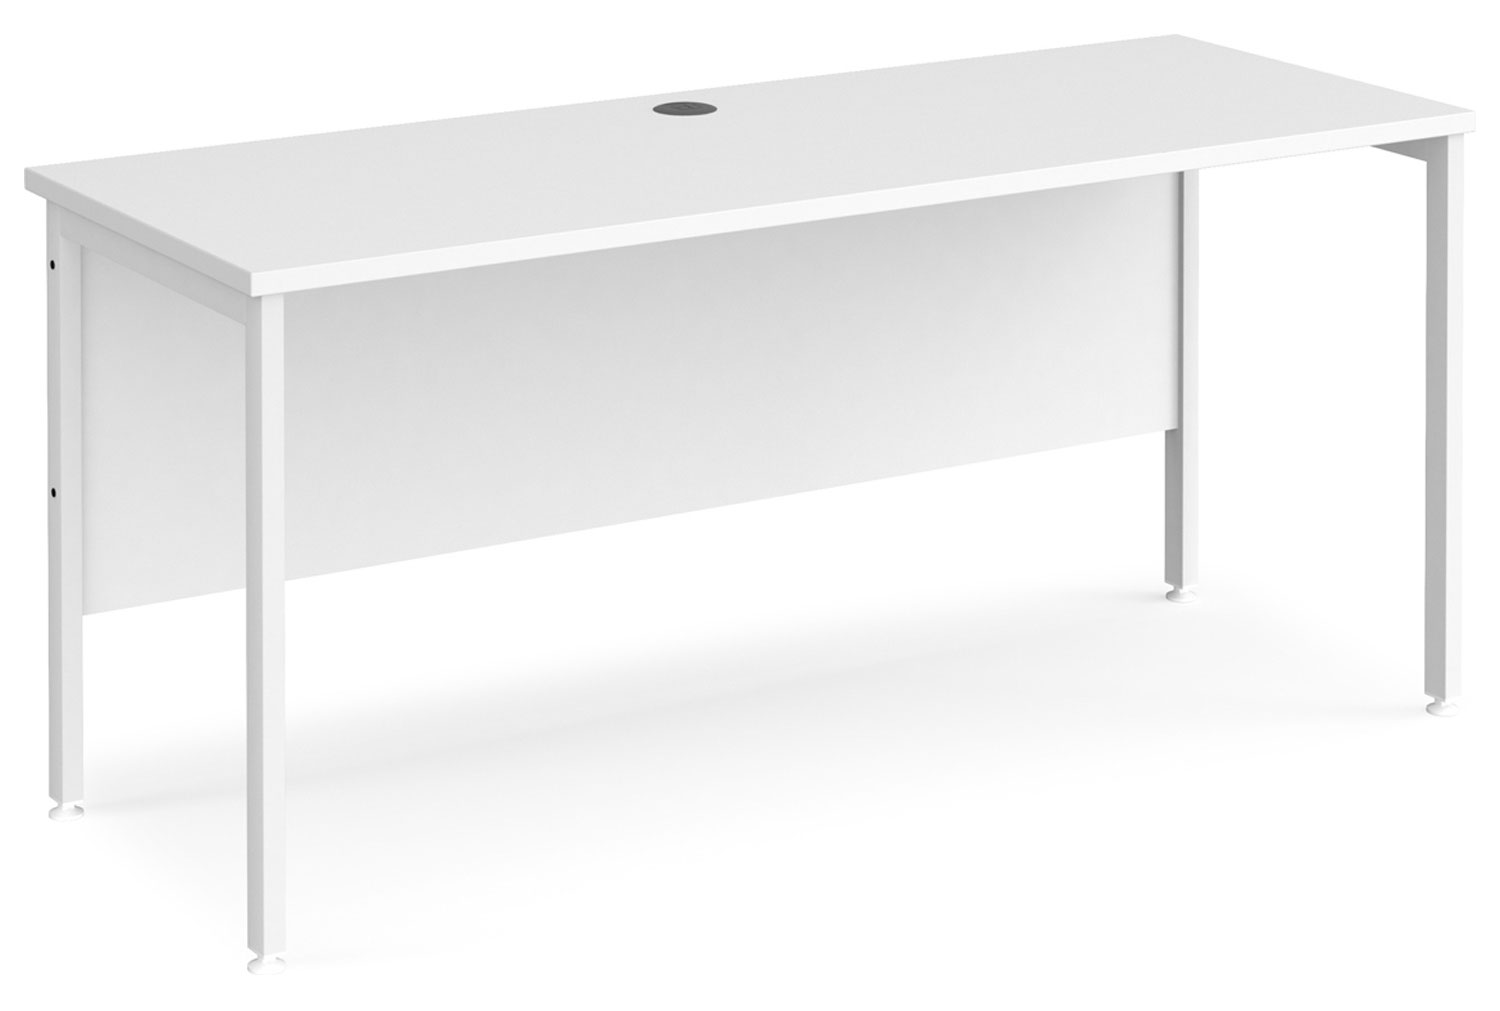 All White Premium H-Leg Narrow Rectangular Office Desk, 160w60dx73h (cm), Fully Installed